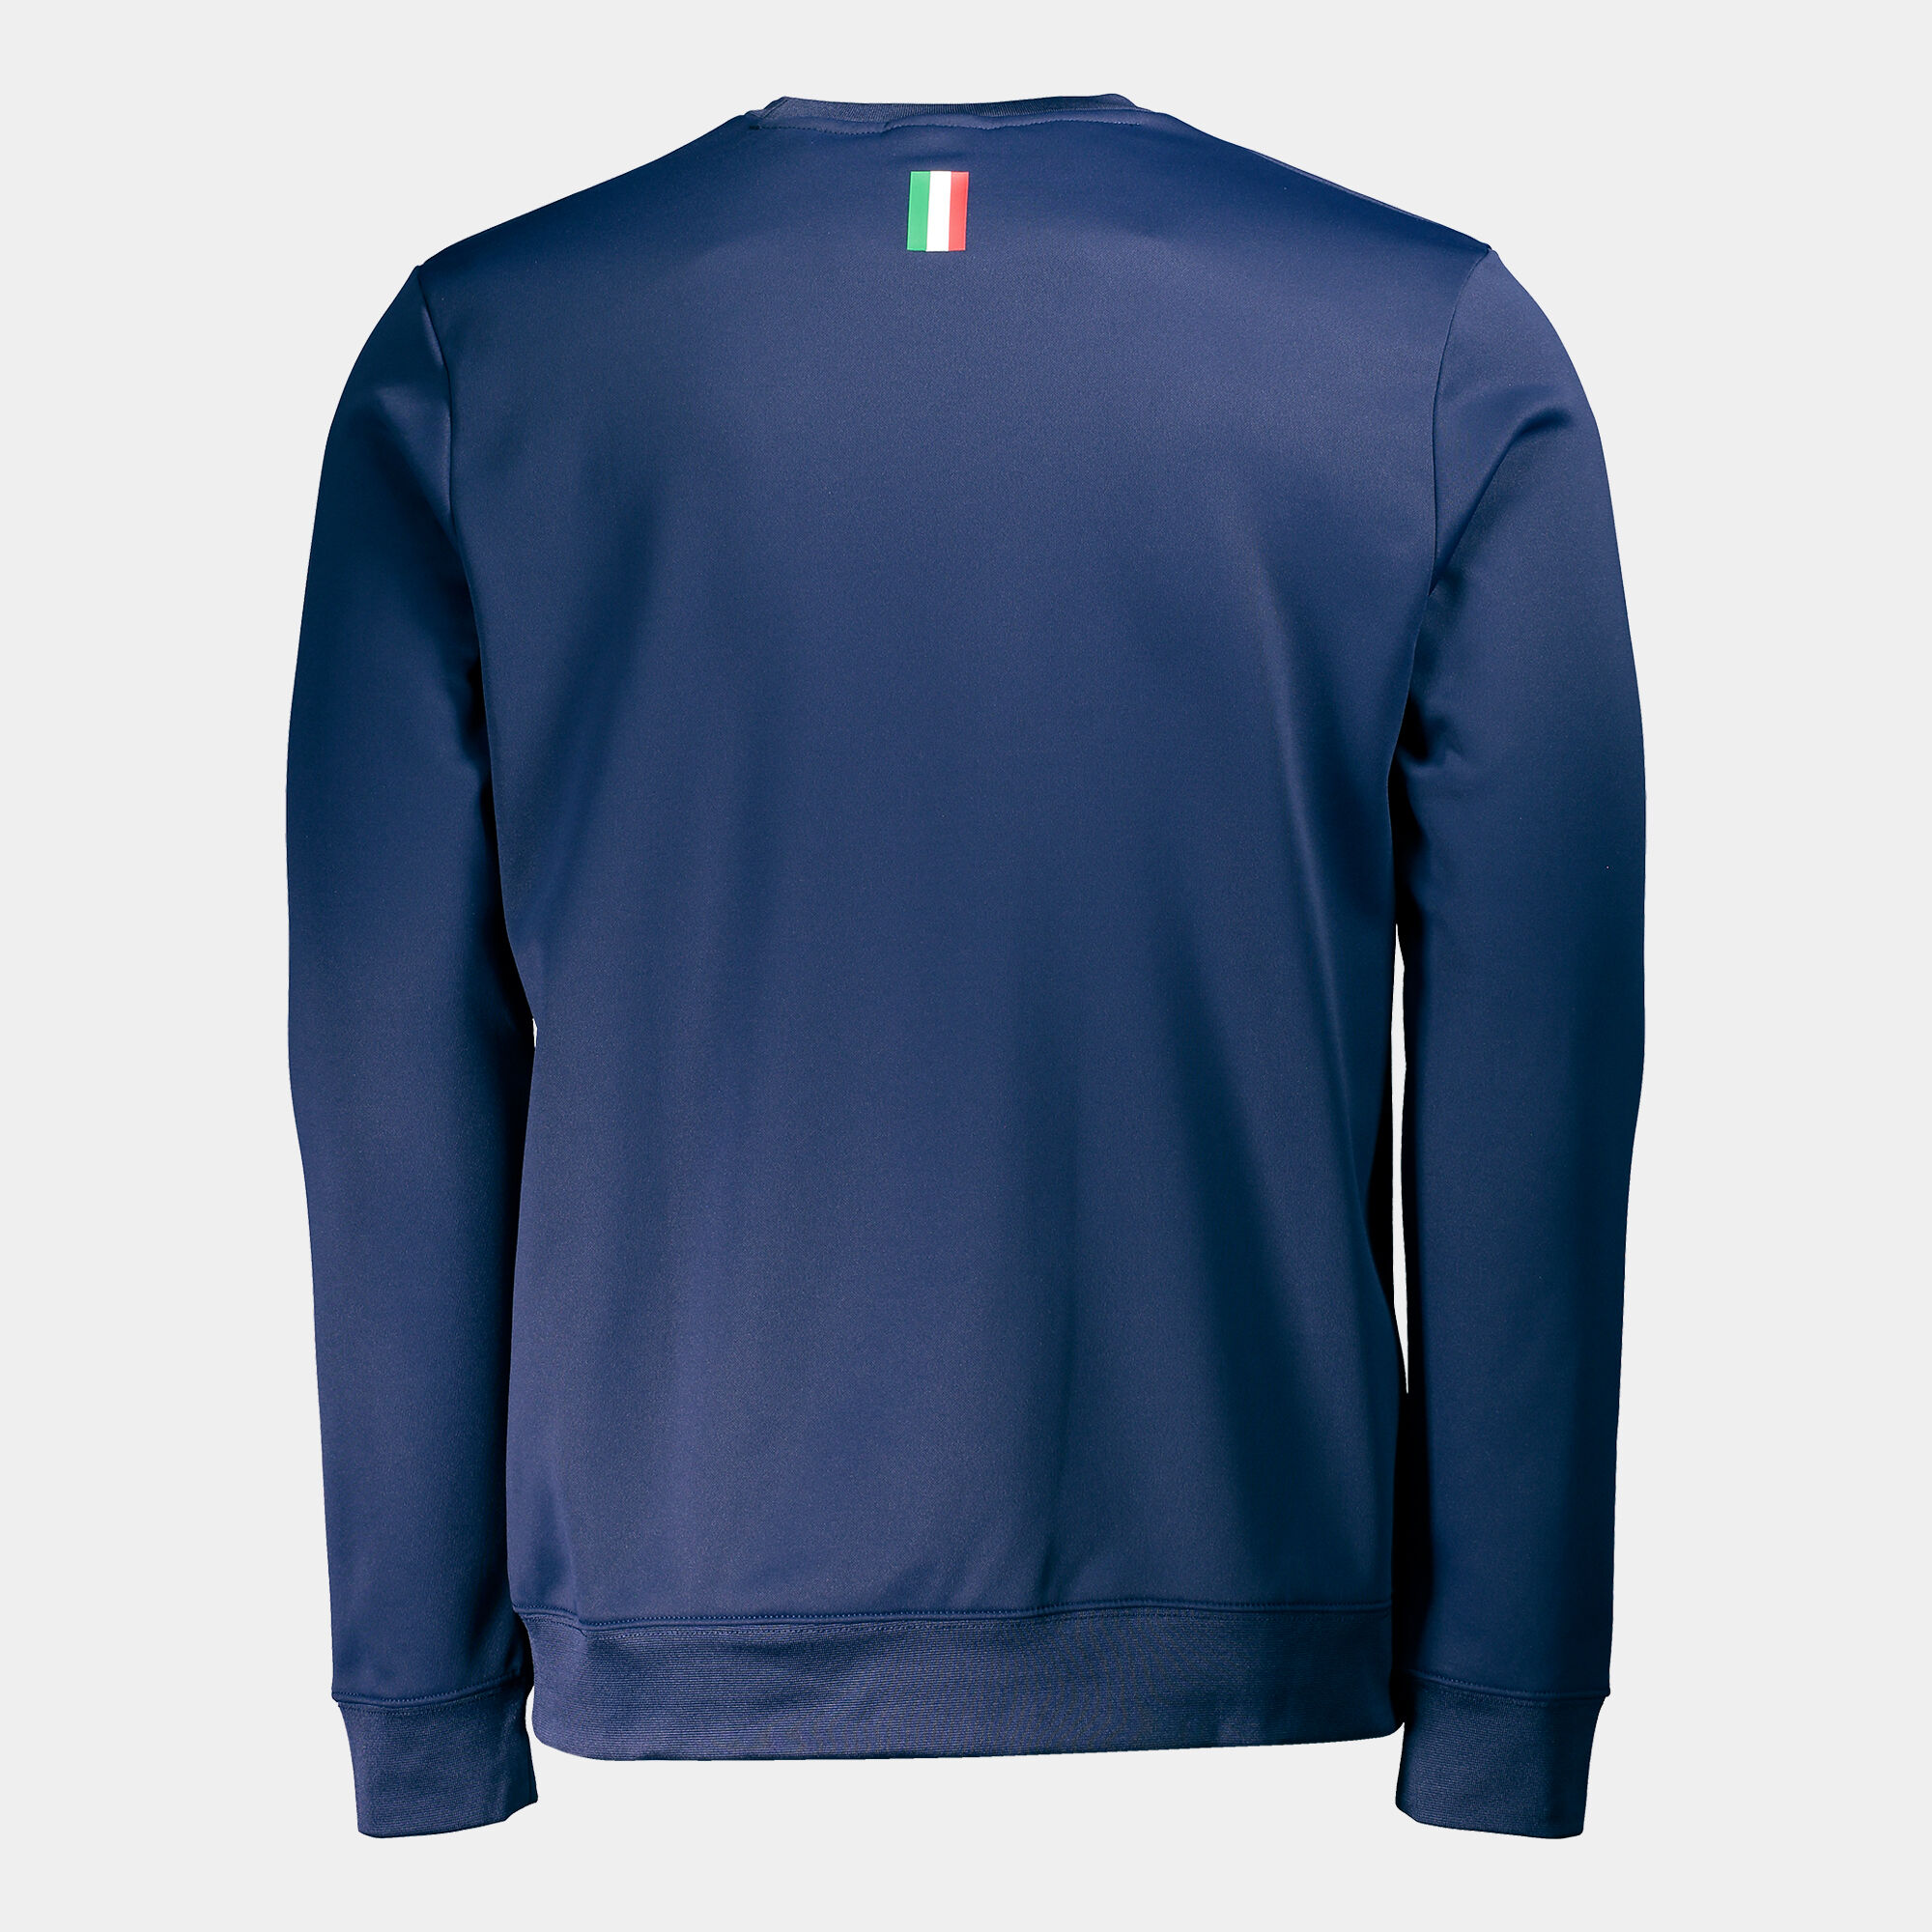 Sweat-shirt Fédération Italienne De Tennis Et De Padel